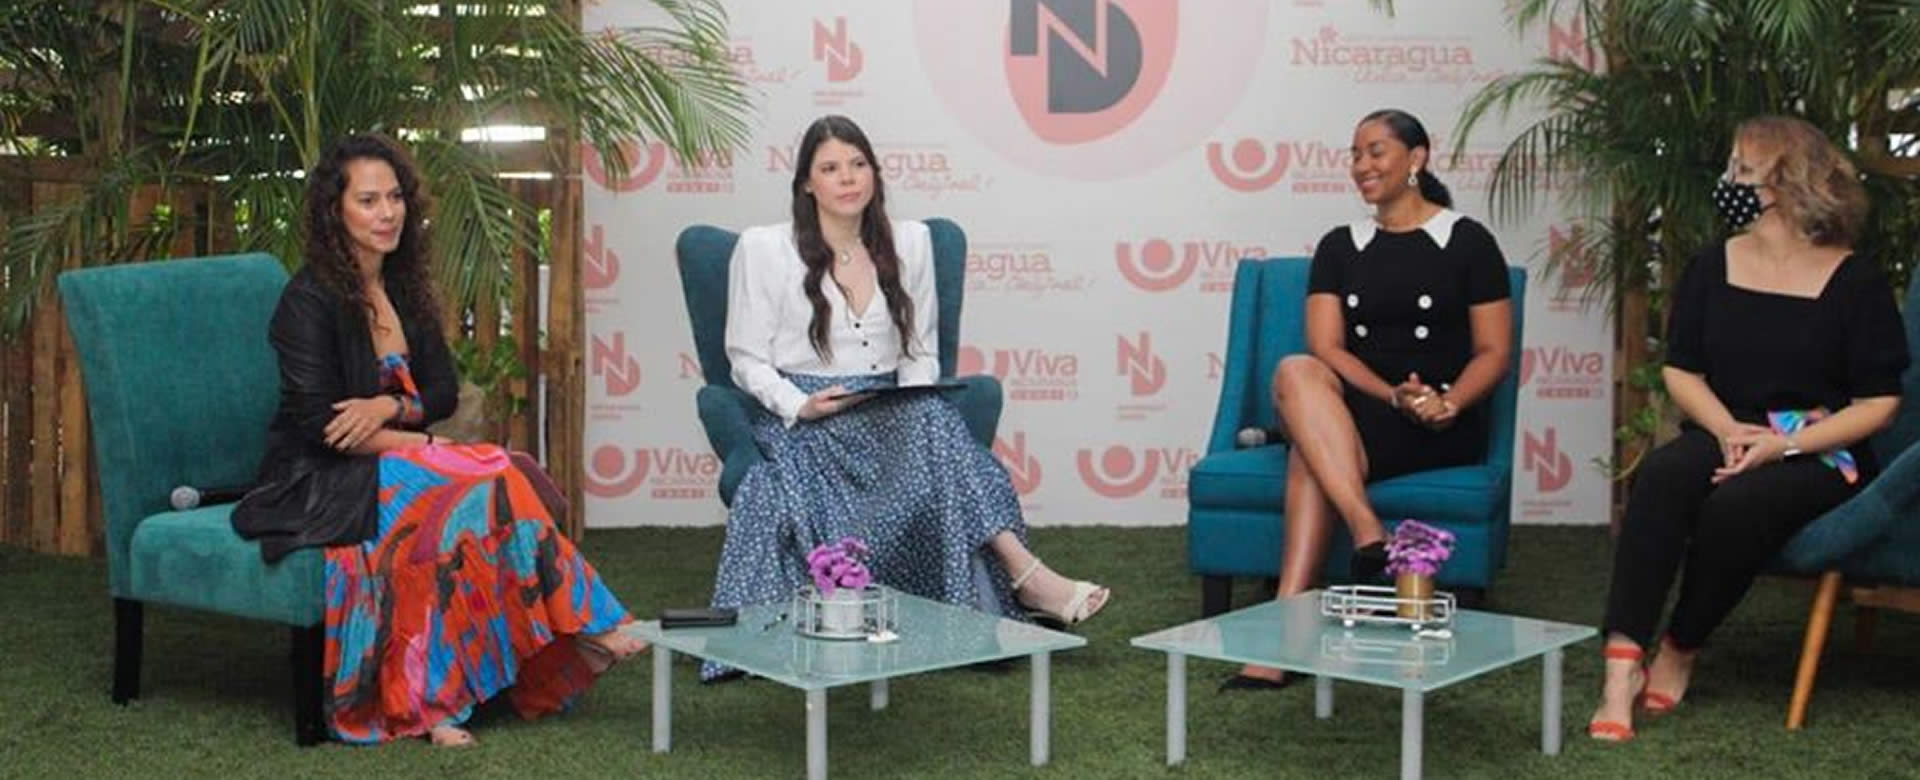 Atrévete a crear un futuro sostenible en la 9na edición de Nicaragua Diseña